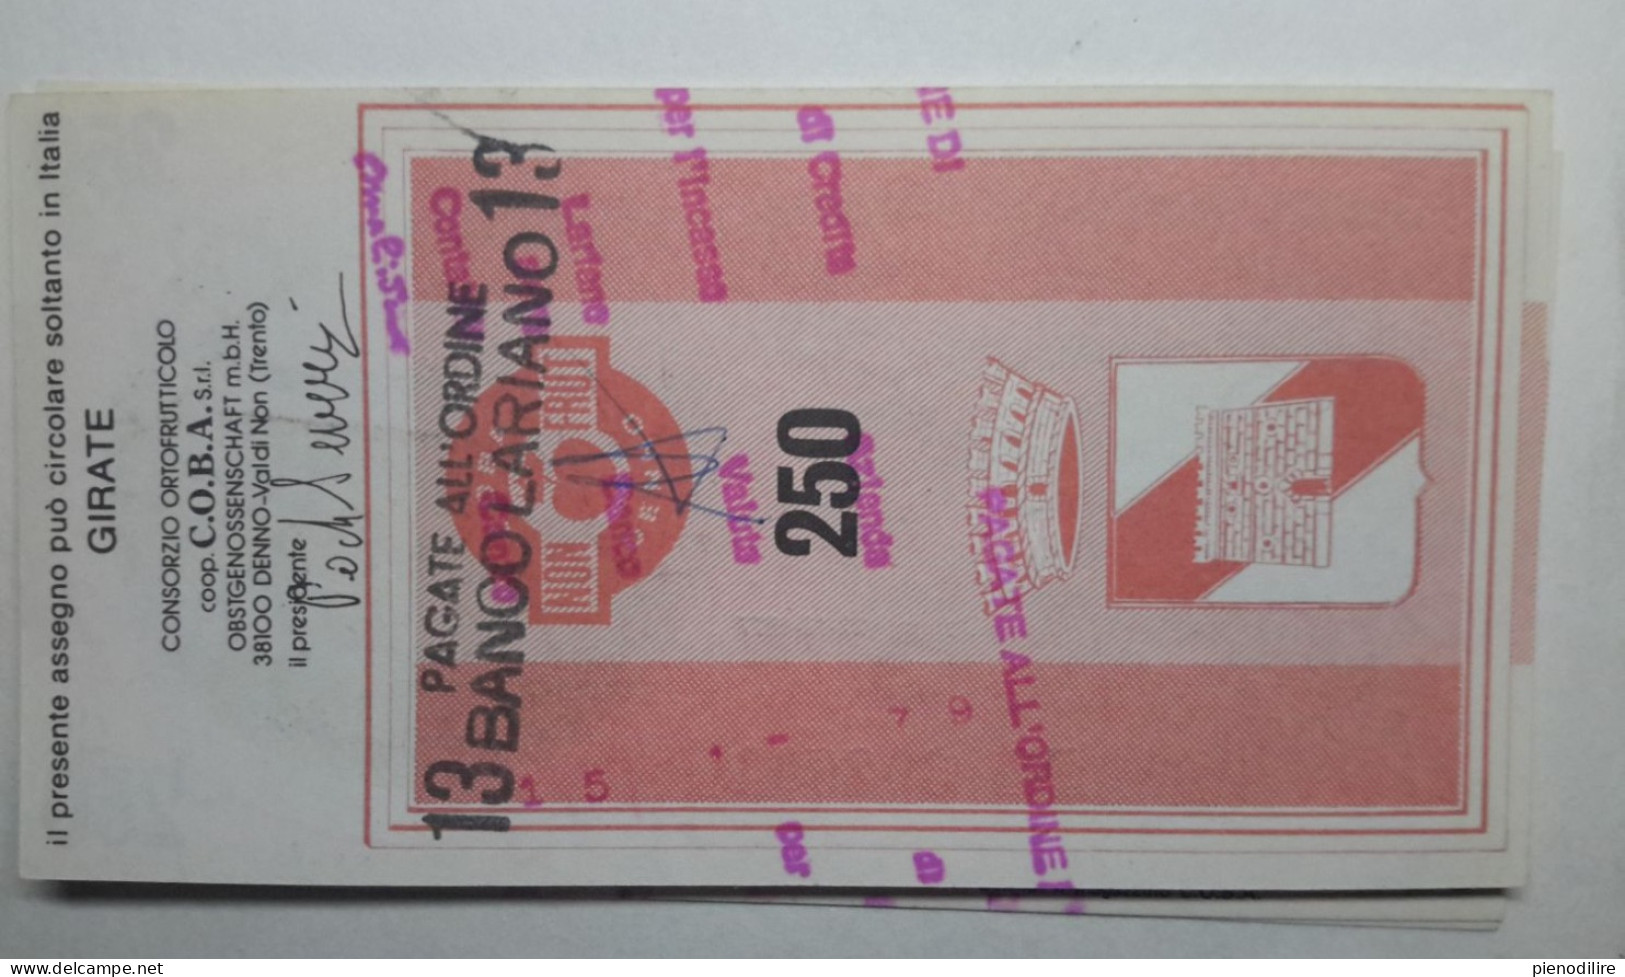 CASSA RURALE DI DENNO 250 LIRE 22.12.1977 C.O.B.A. SRL PAGATA (A.27) - [10] Cheques Y Mini-cheques